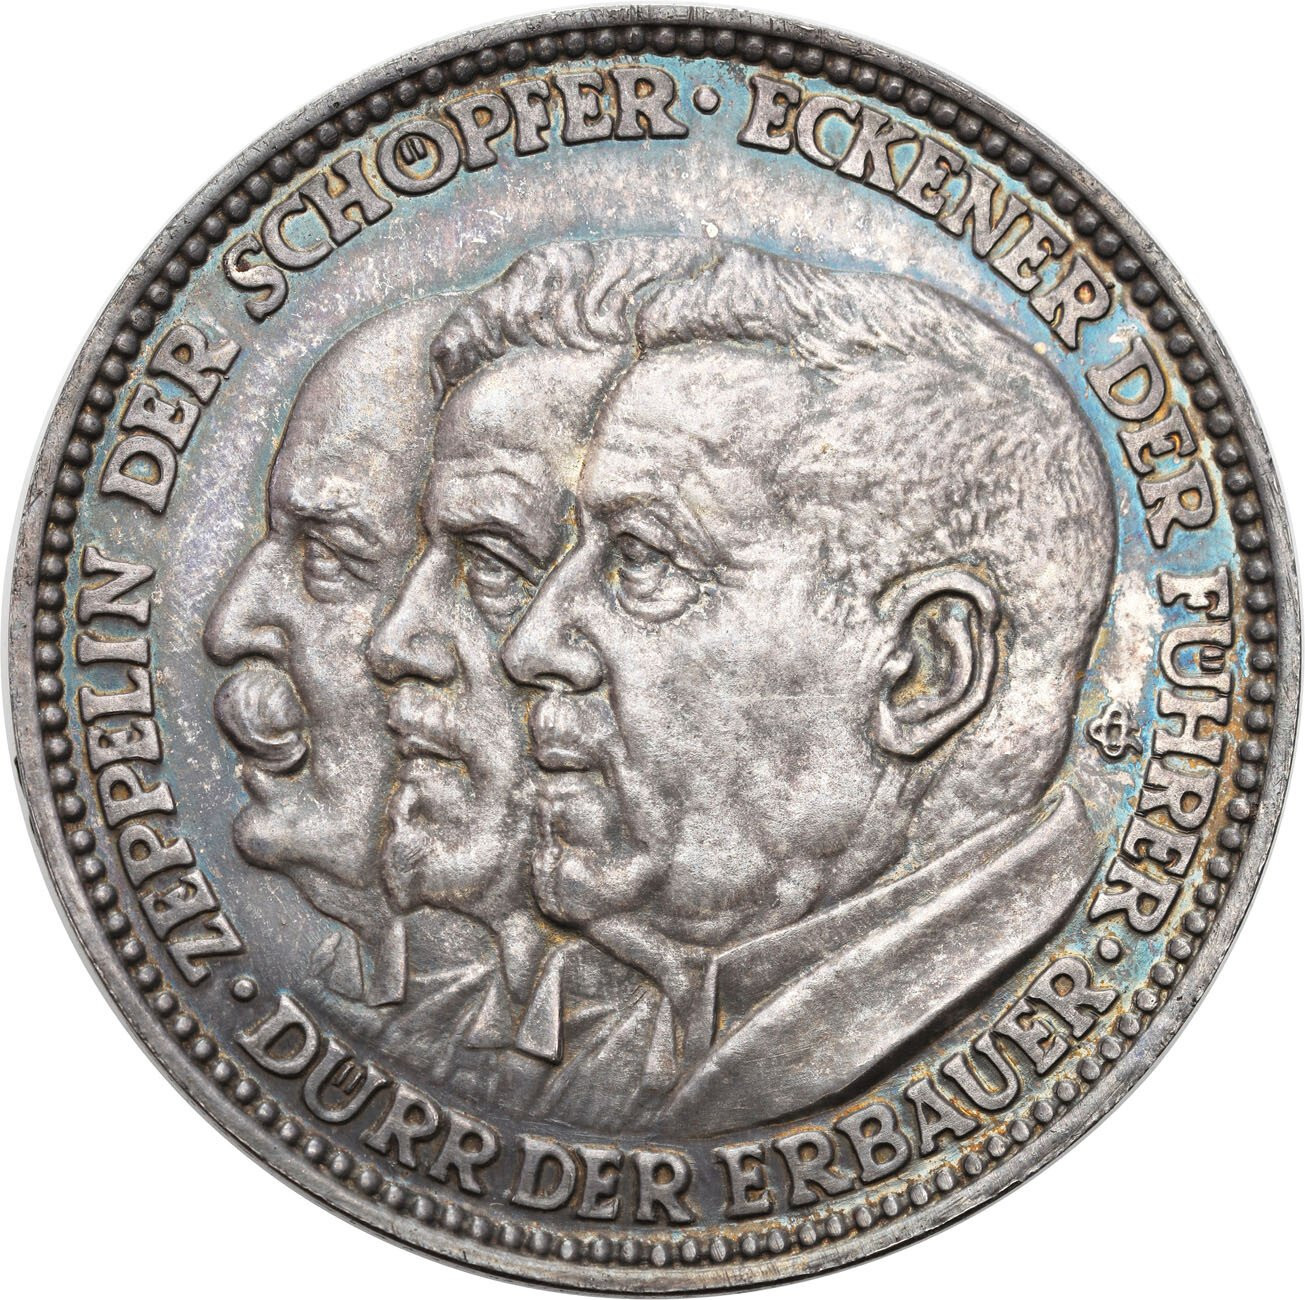 Niemcy, Weimar. Medal 1929 Graf Zeppelin, srebro